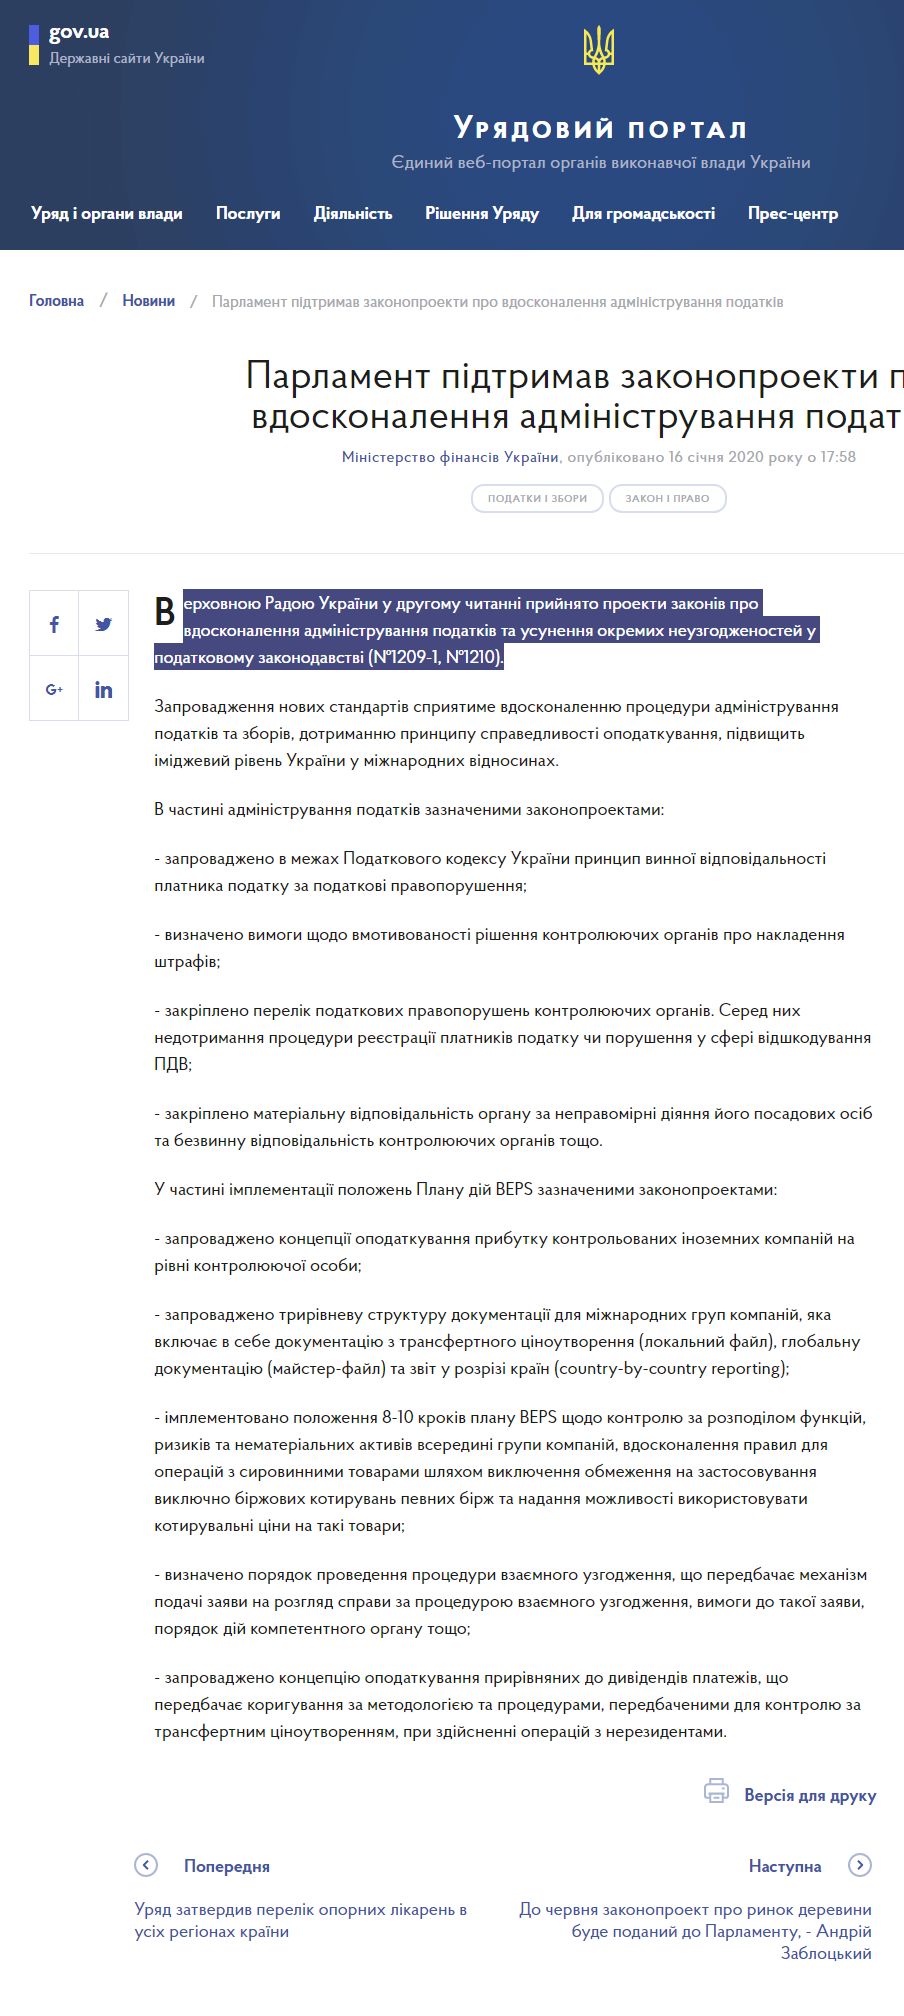 https://www.kmu.gov.ua/news/parlament-pidtrimav-zakonoproekti-pro-vdoskonalennya-administruvannya-podatkiv